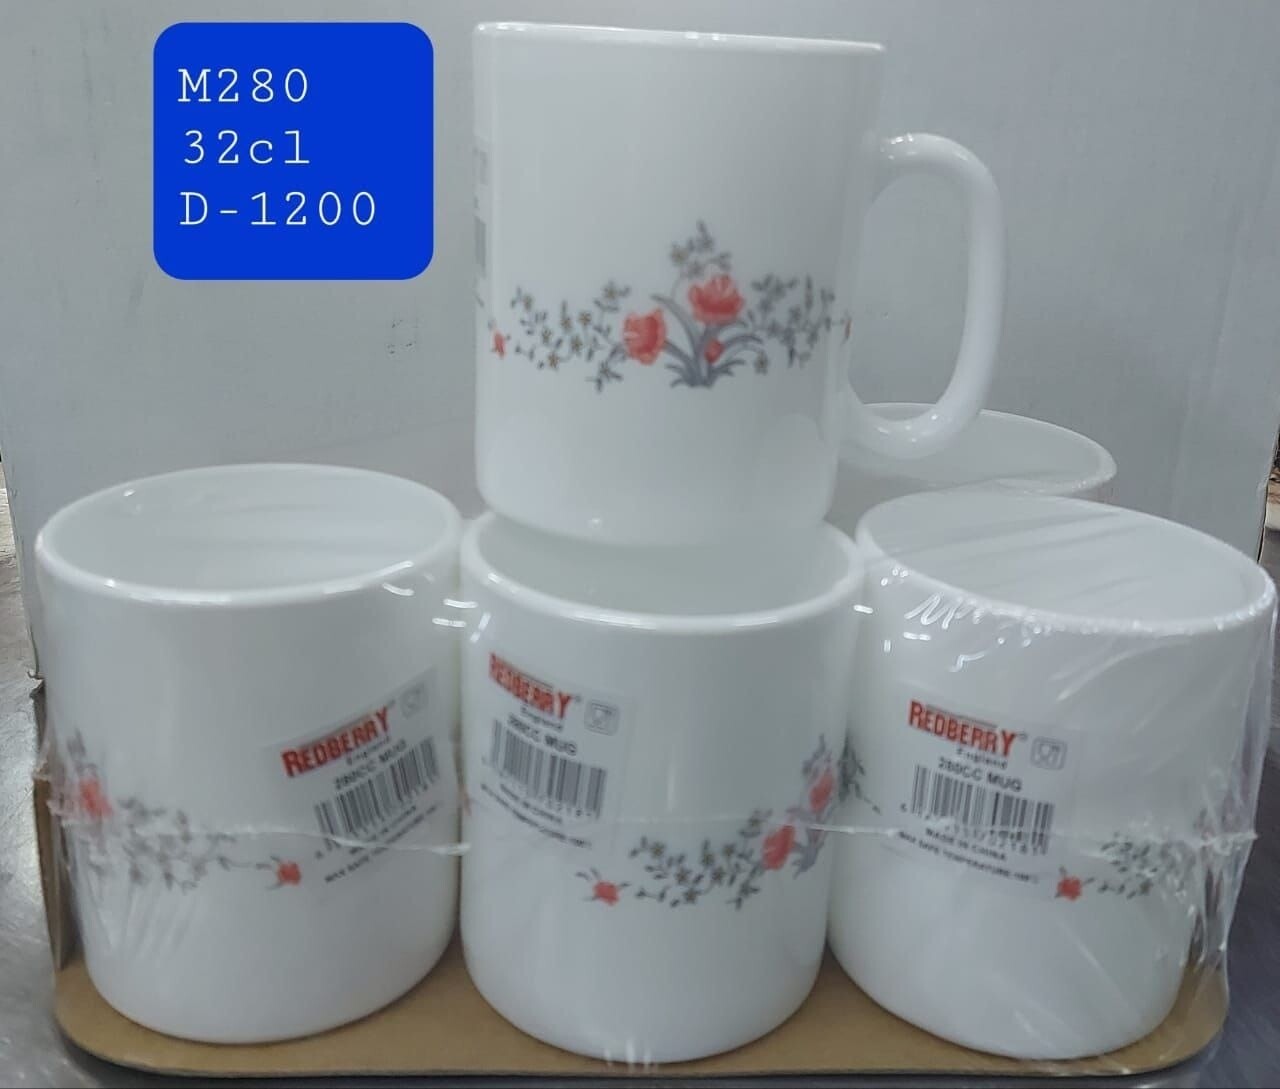 Redberry 6-Piece Ceramic Mugs Set D-1200